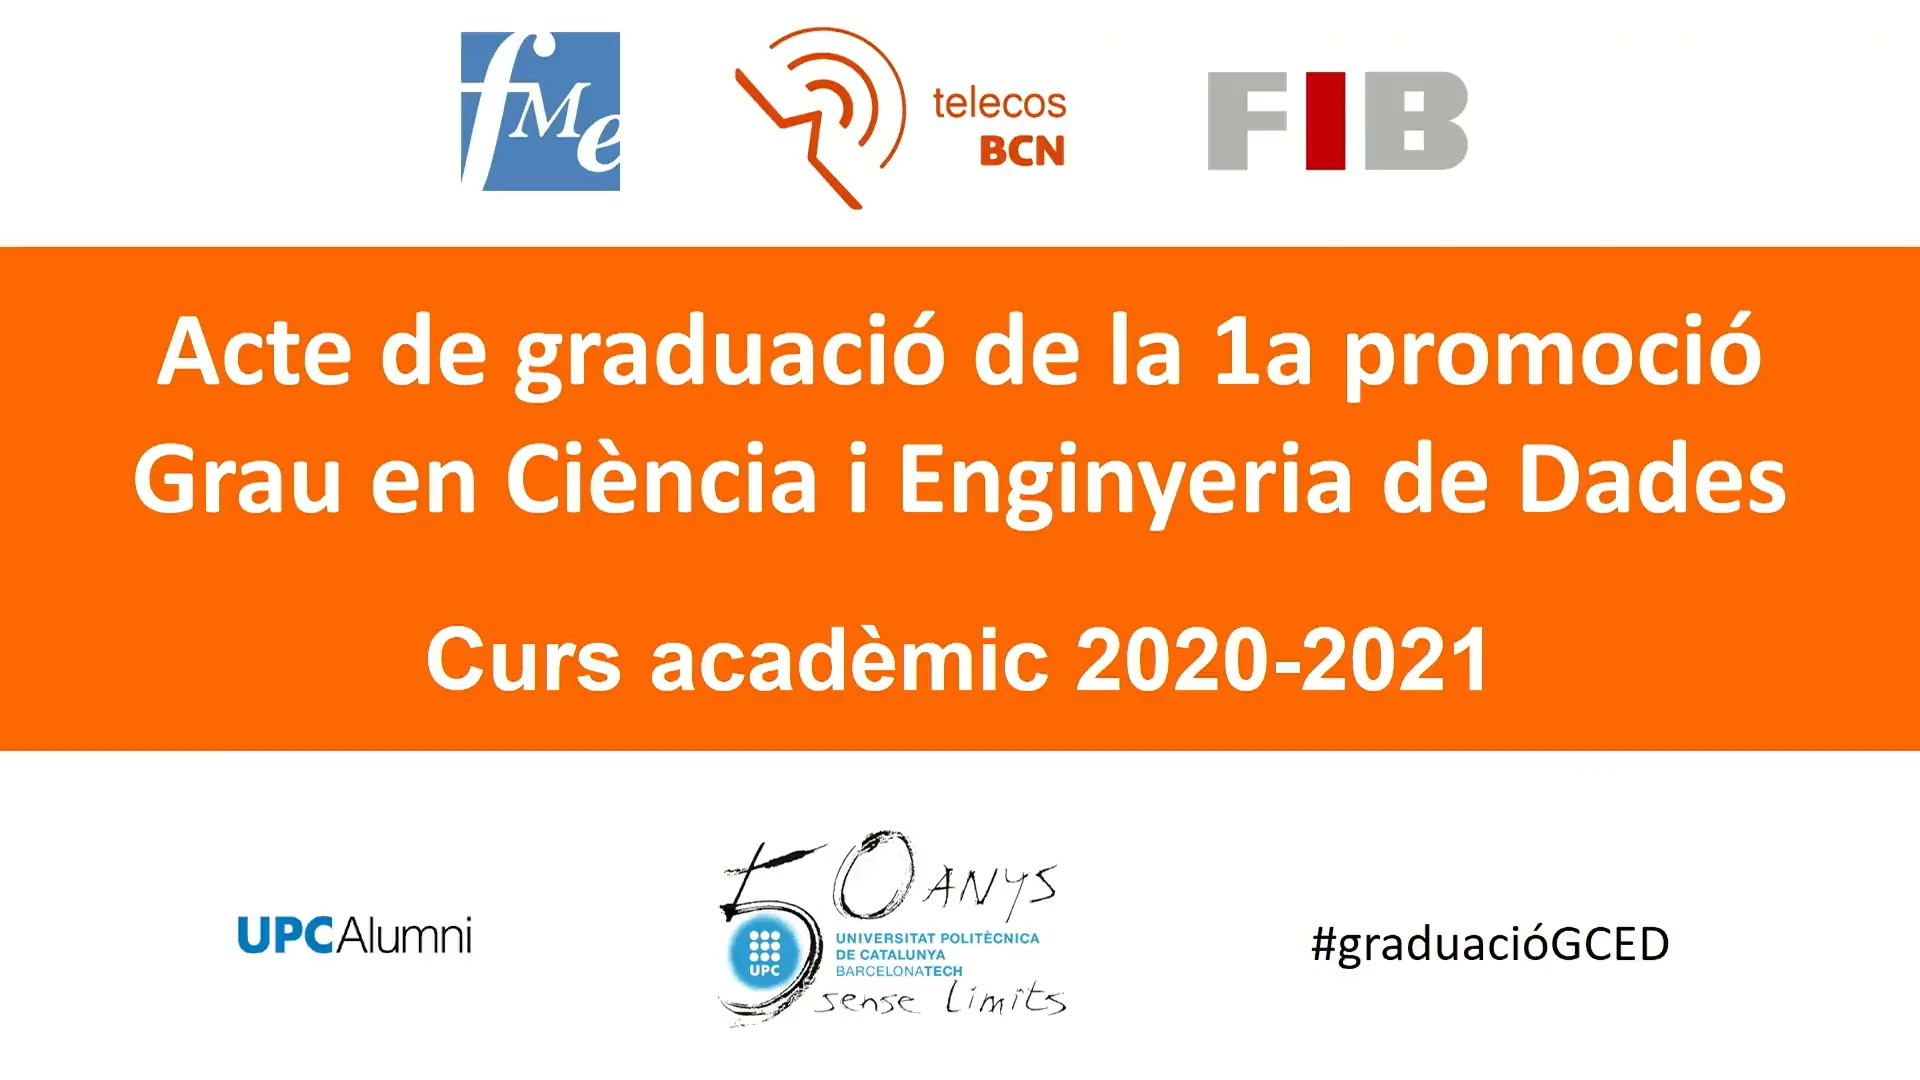 Acte de graduació de la 1a promoció del Grau en Ciència i Enginyeria de Dades 2020-2021